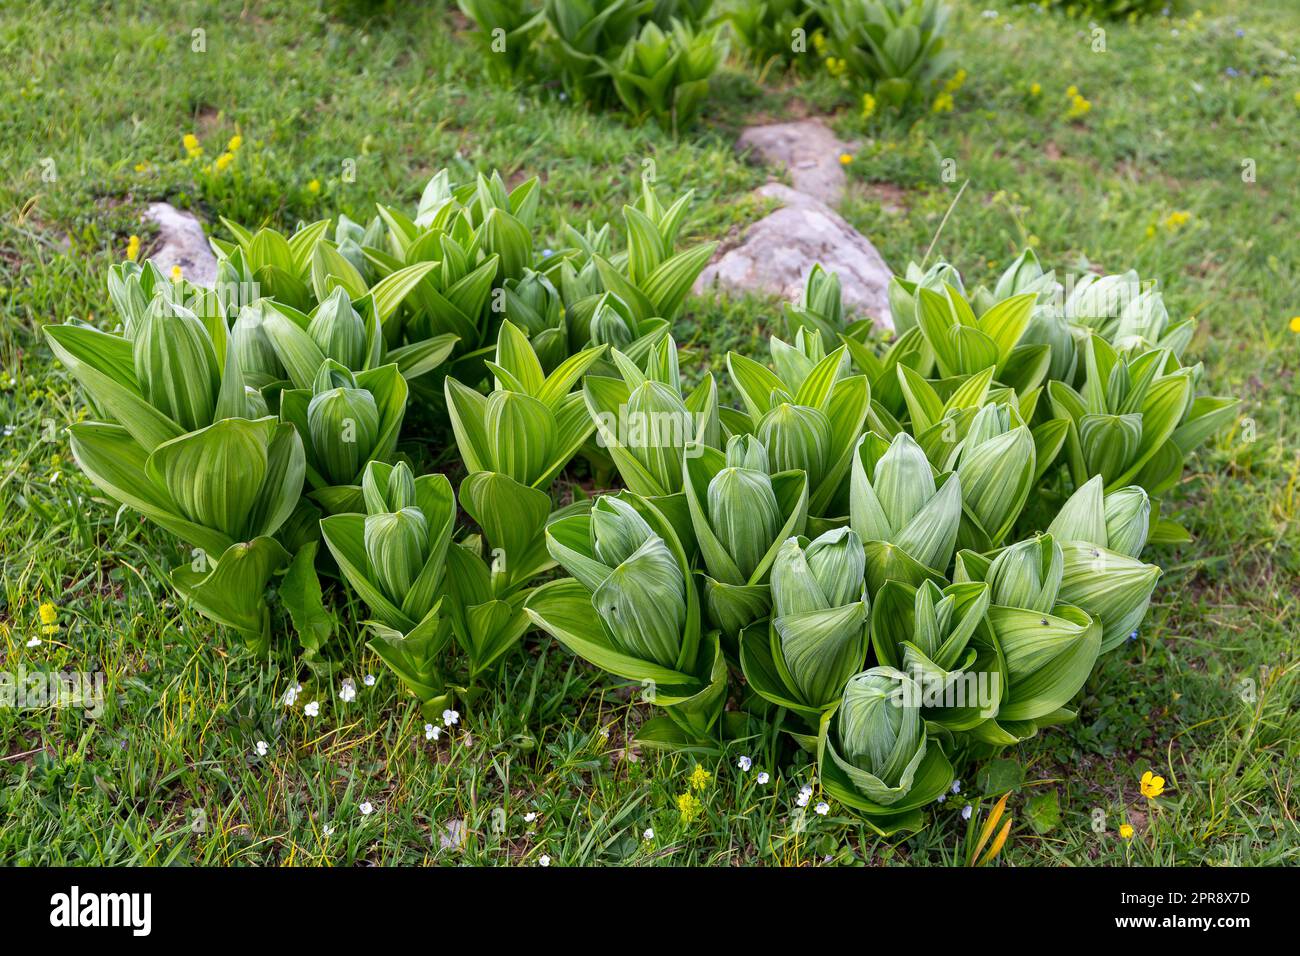 Veratrum Album (oder falsches Helleborin, Weißer Helleboran, Veratrum lobelianum), giftige Pflanze in der Familie Melanthiaceae, grüne Blätter. Stockfoto